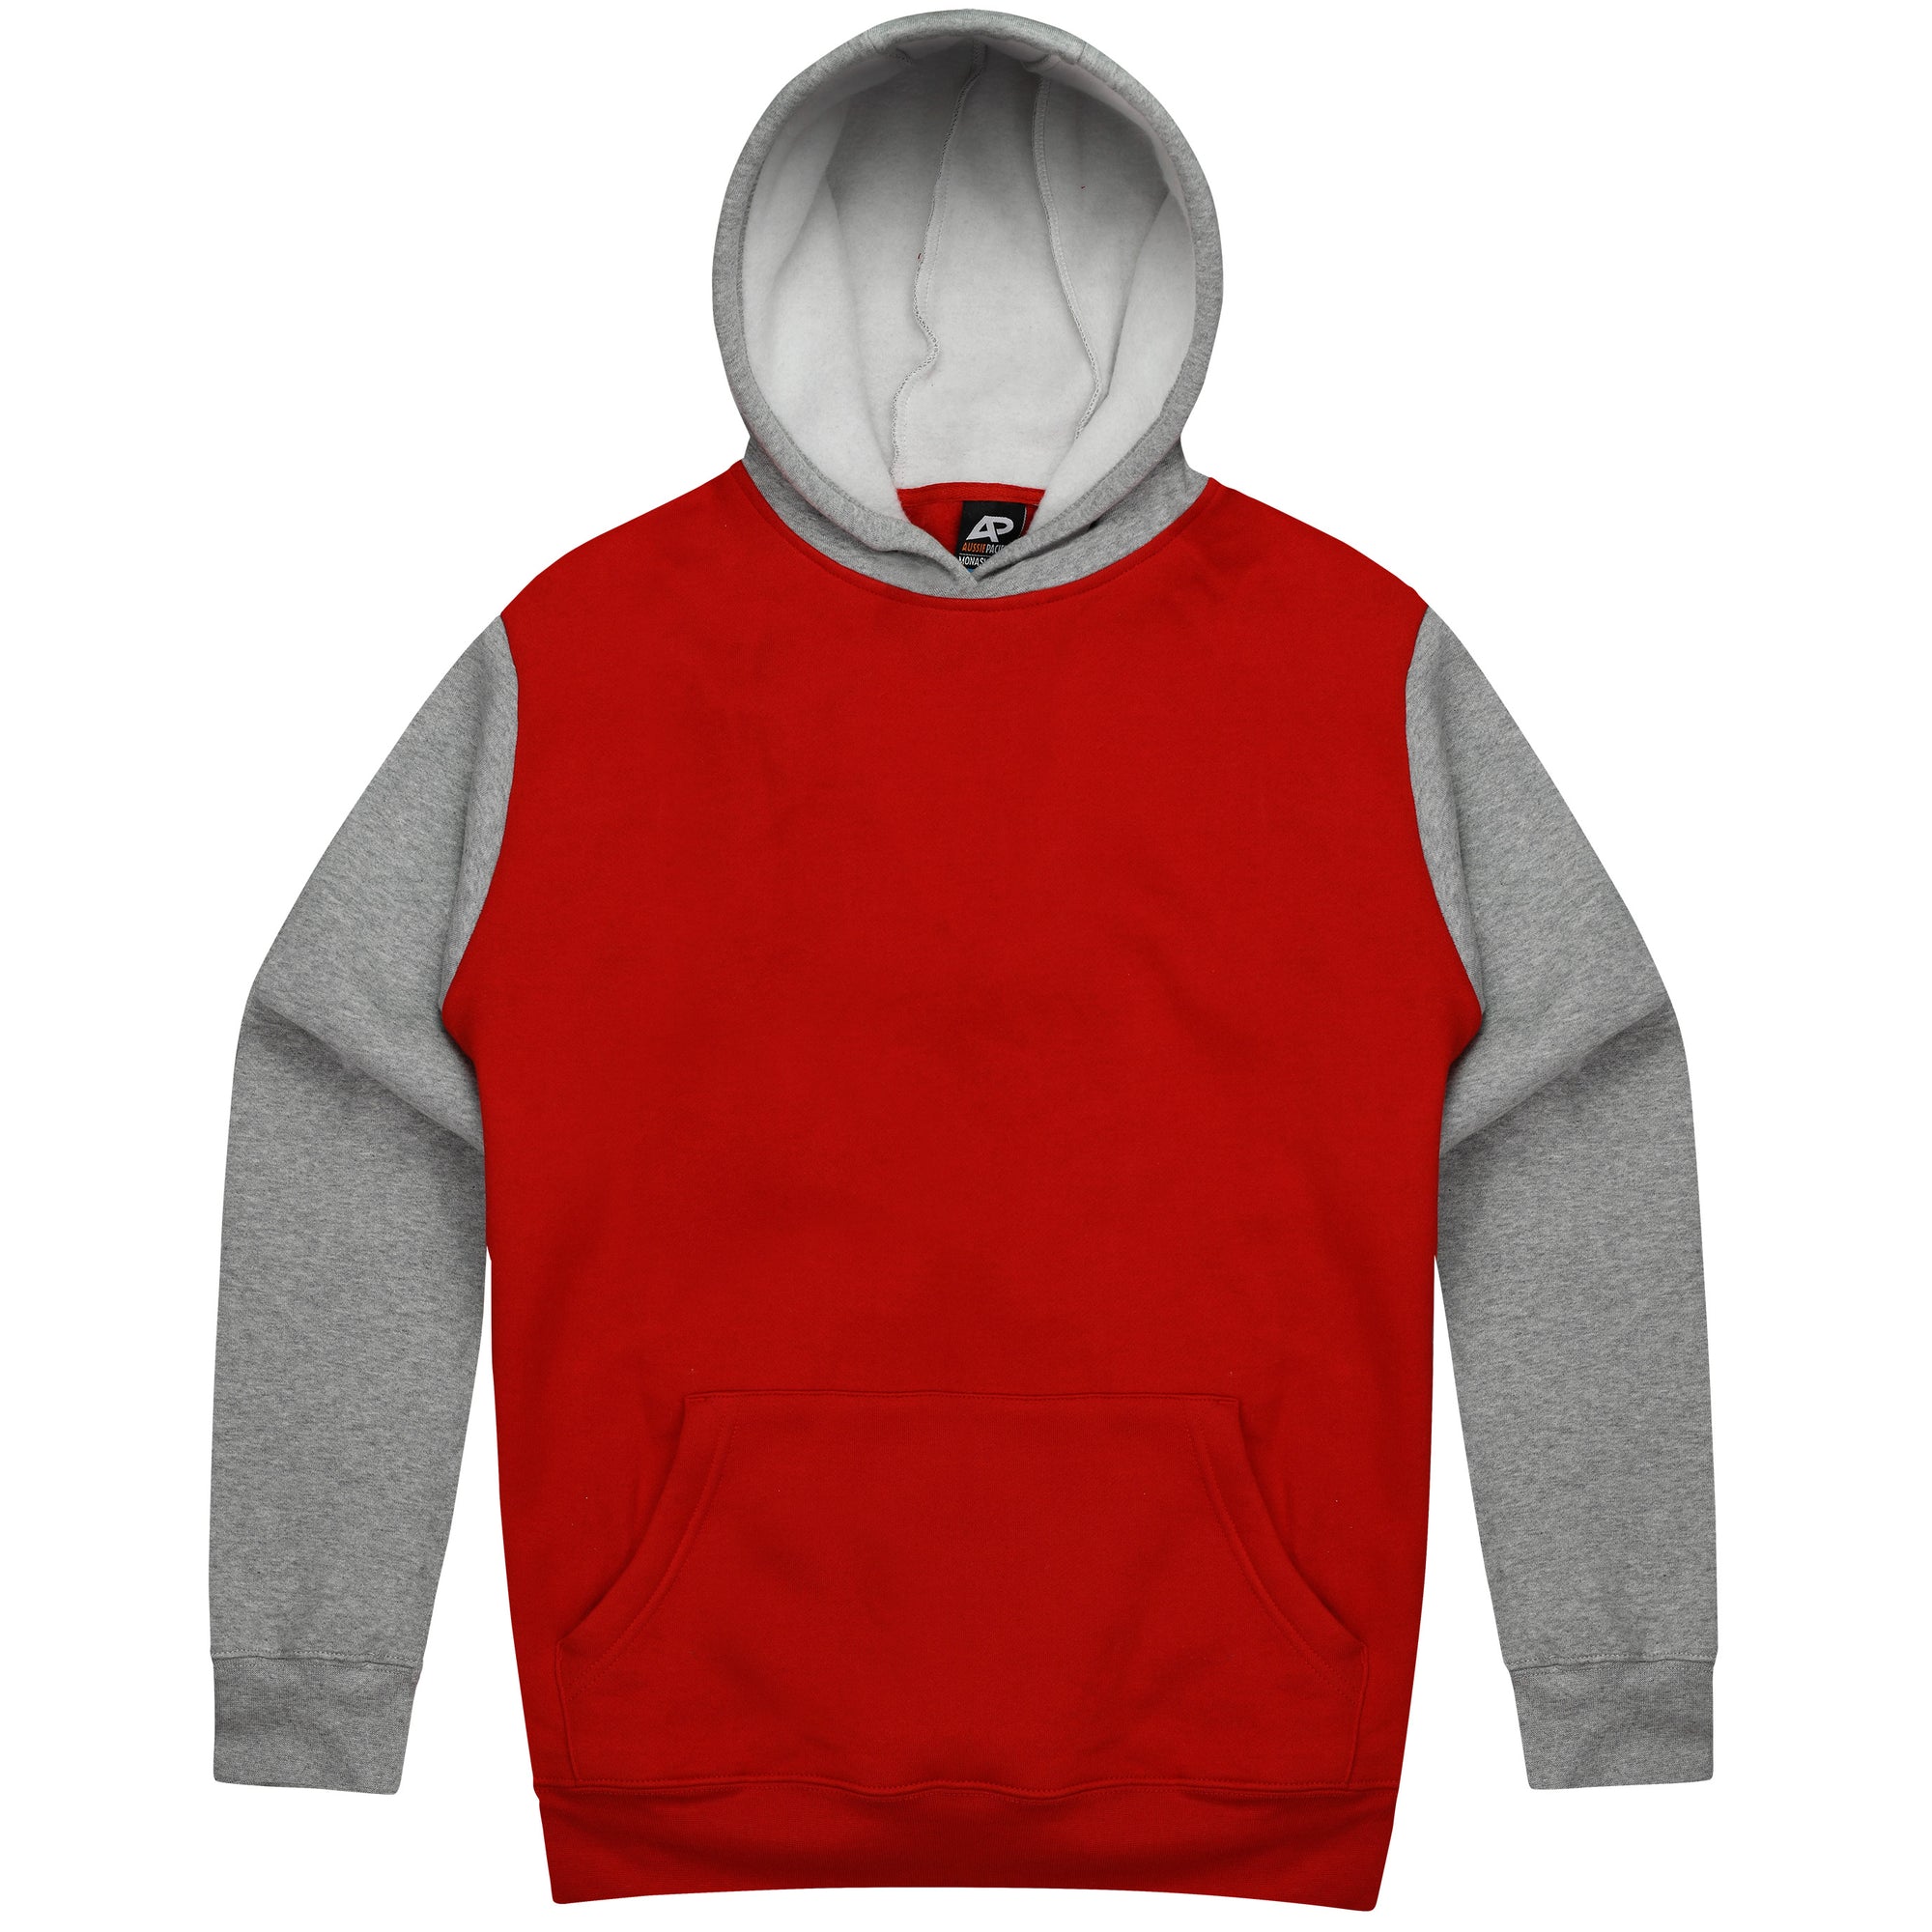 Custom Printed Monash Hoodies - Red/Grey